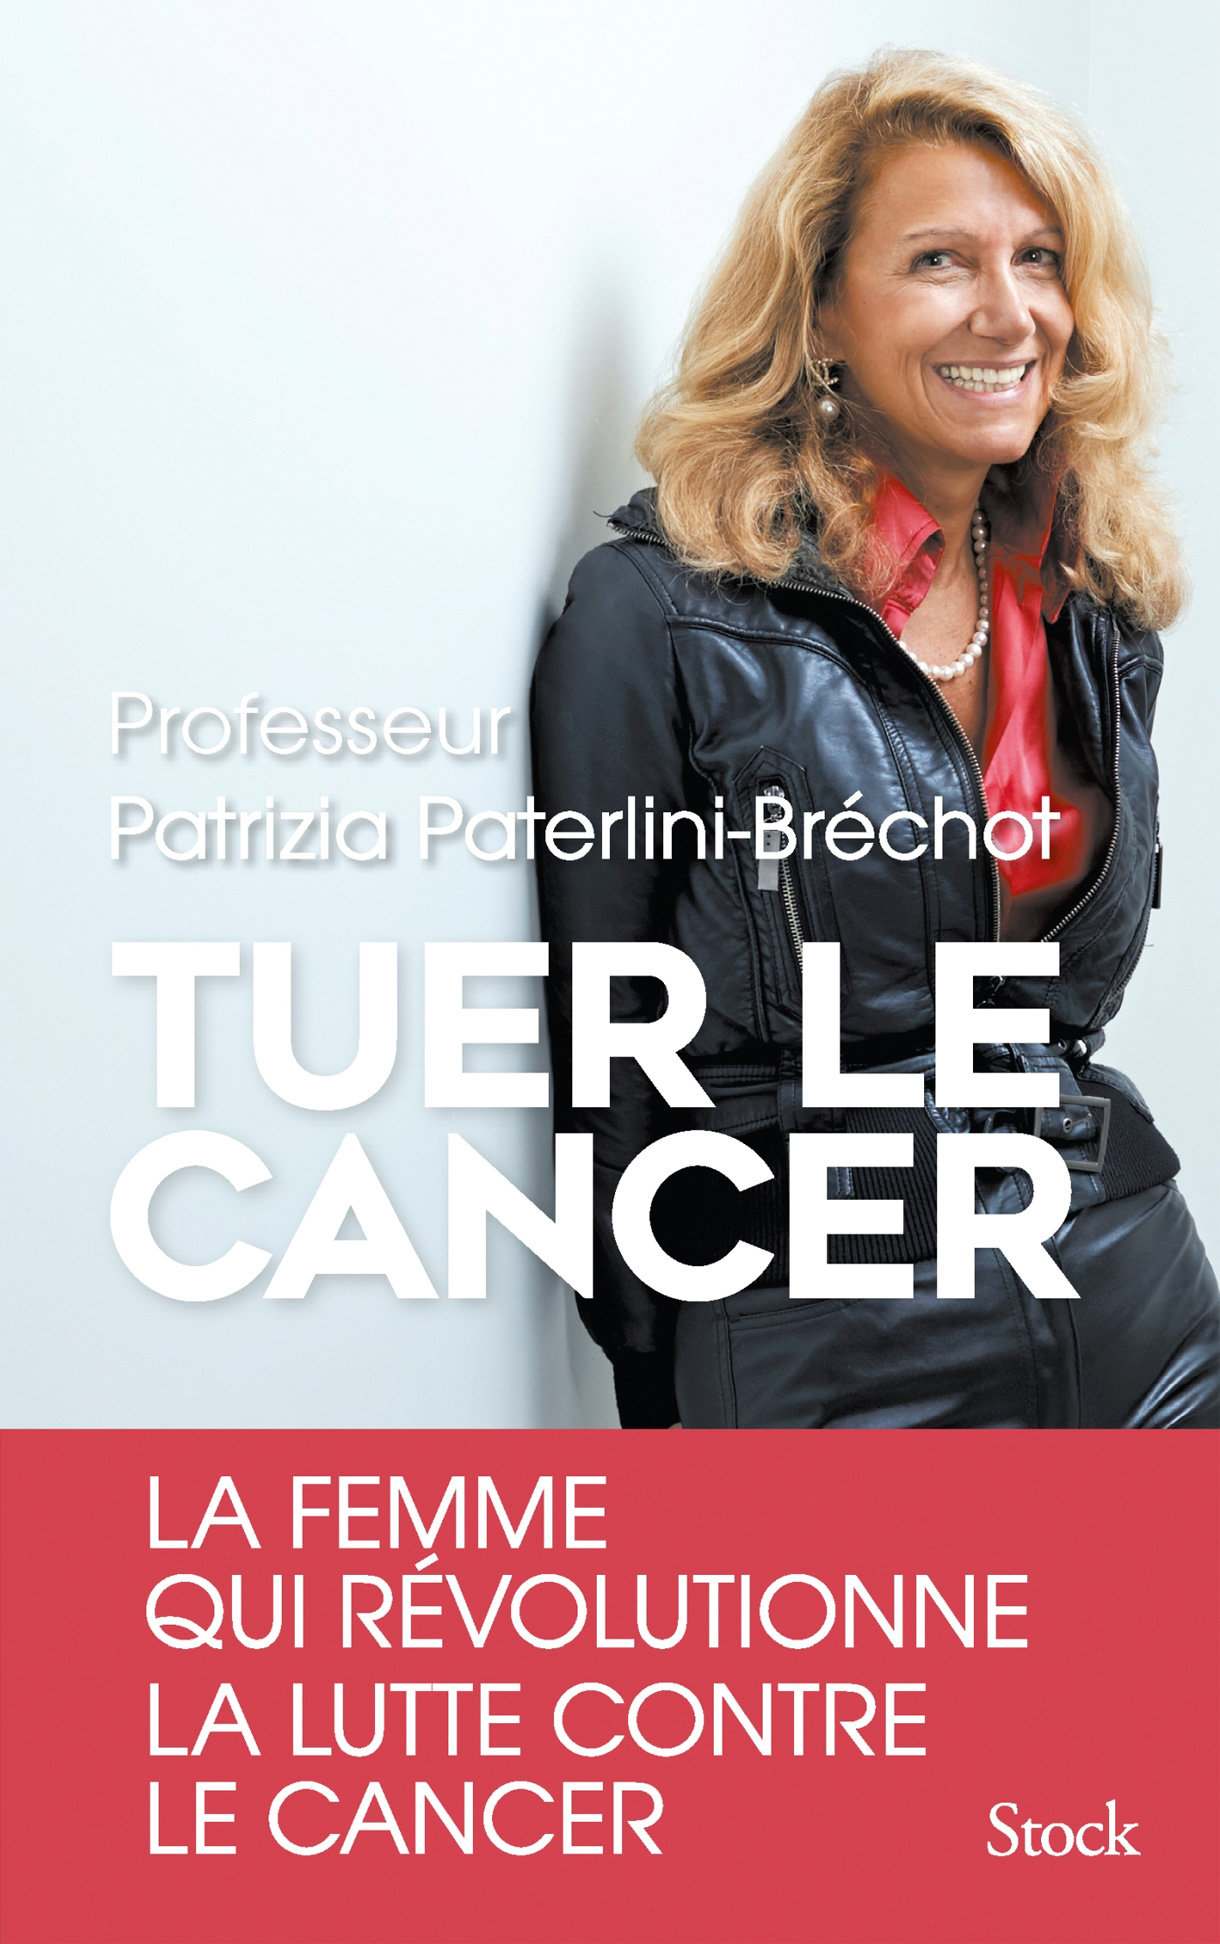 Tuer le cancer. Patrizia Paterlini-Bréchot